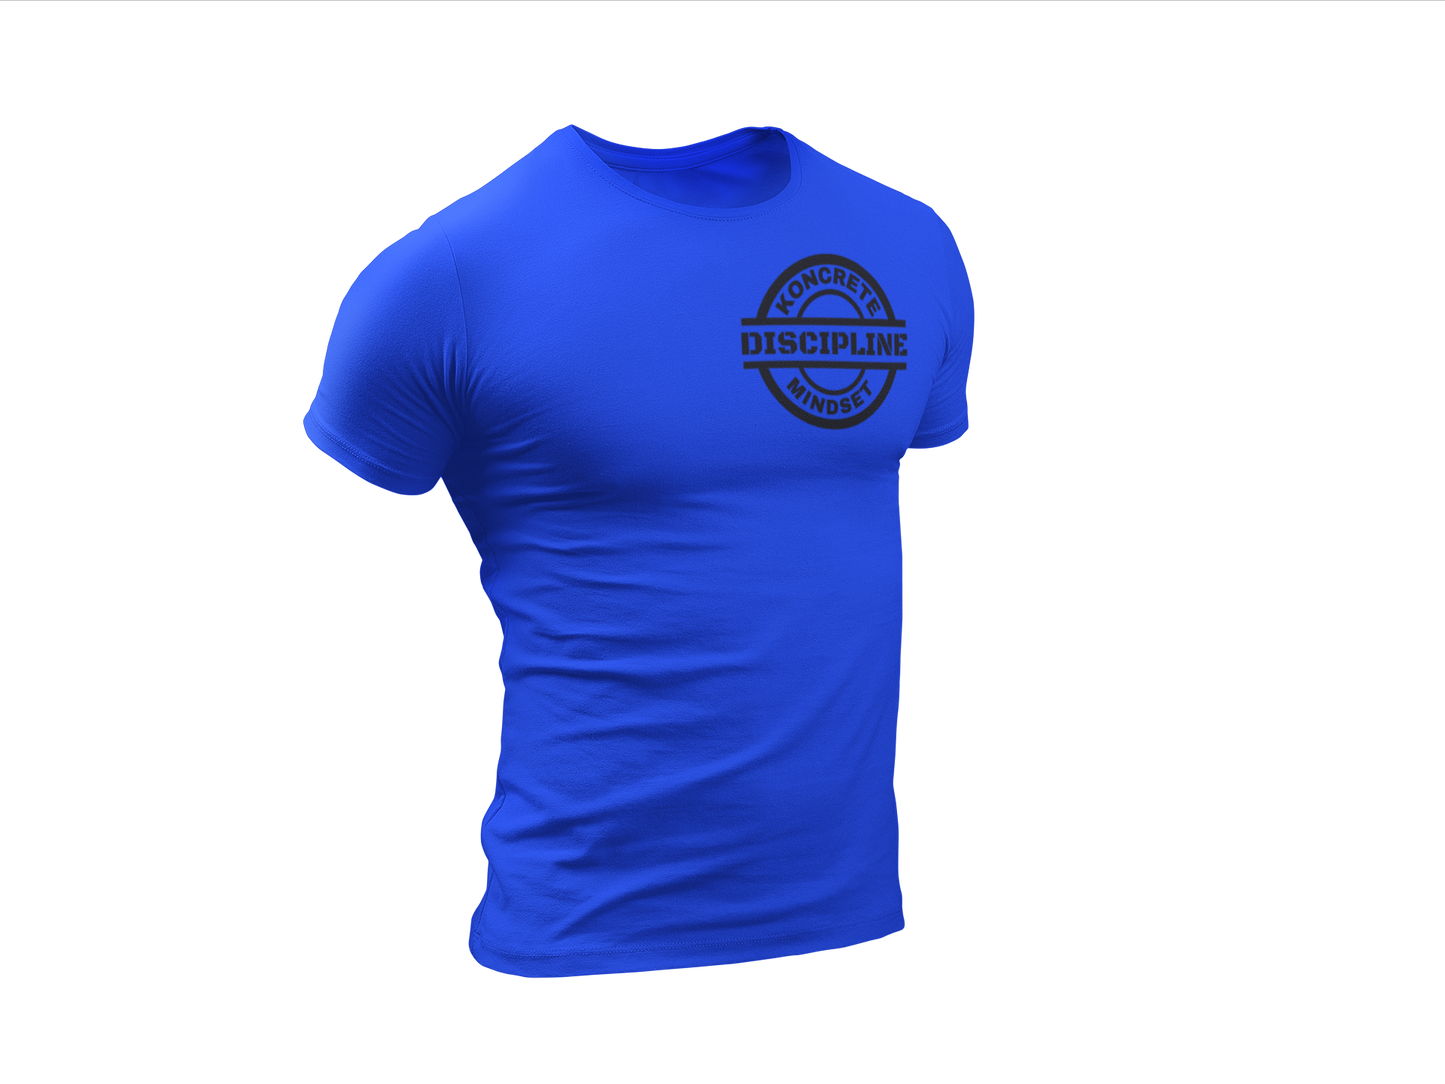 royal blue Koncrete Mindset discipline t-shirt with black design on left chest 